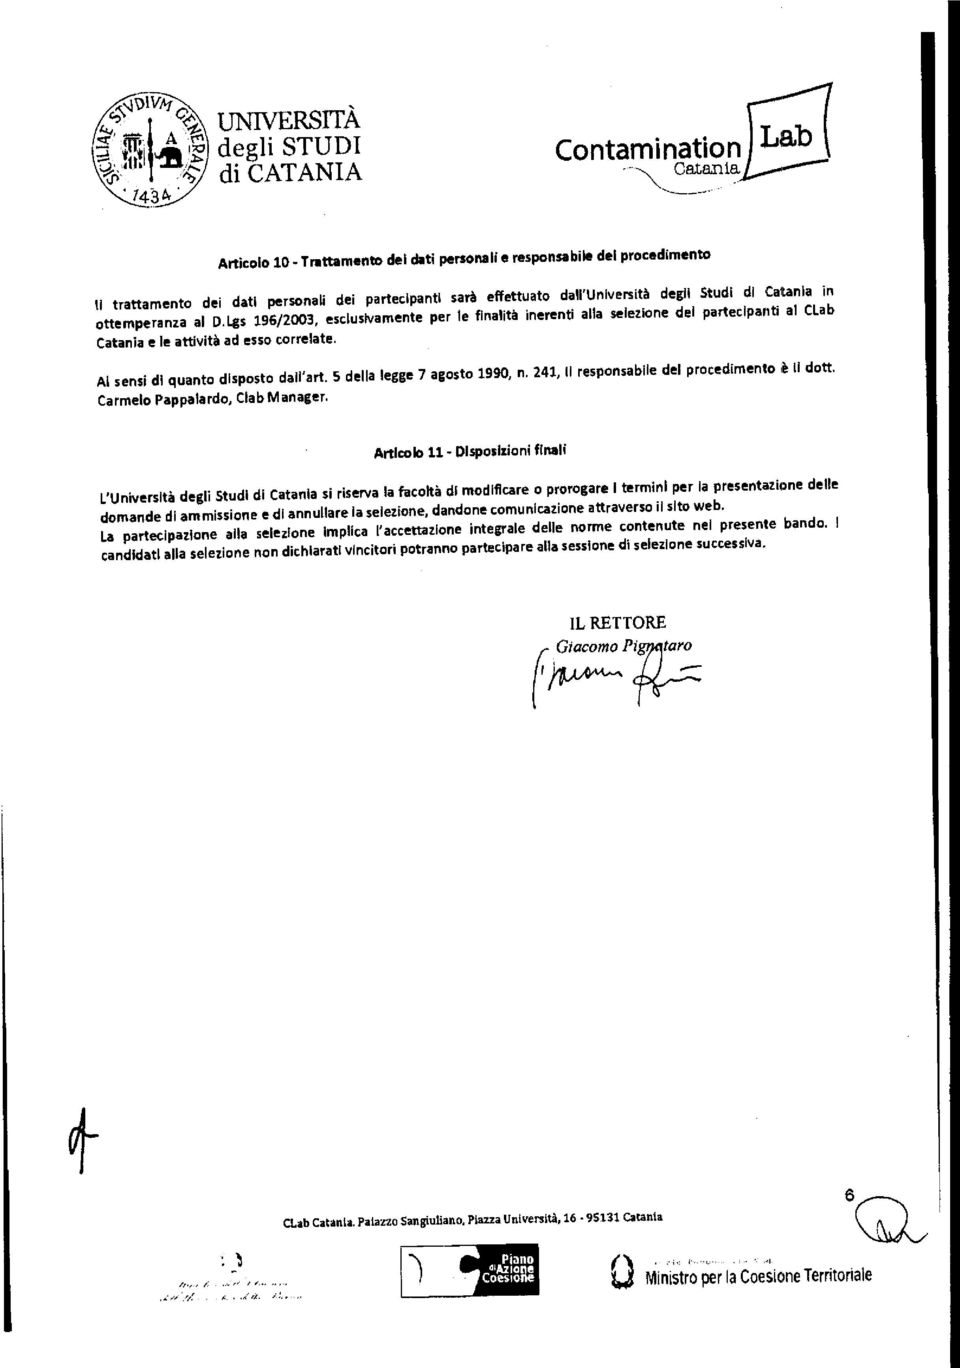 5 della Carmelo Pappalardo, Clab Manager. legge 7 agosto 1990, n. 241, II responsabile del procedimento Il dott.